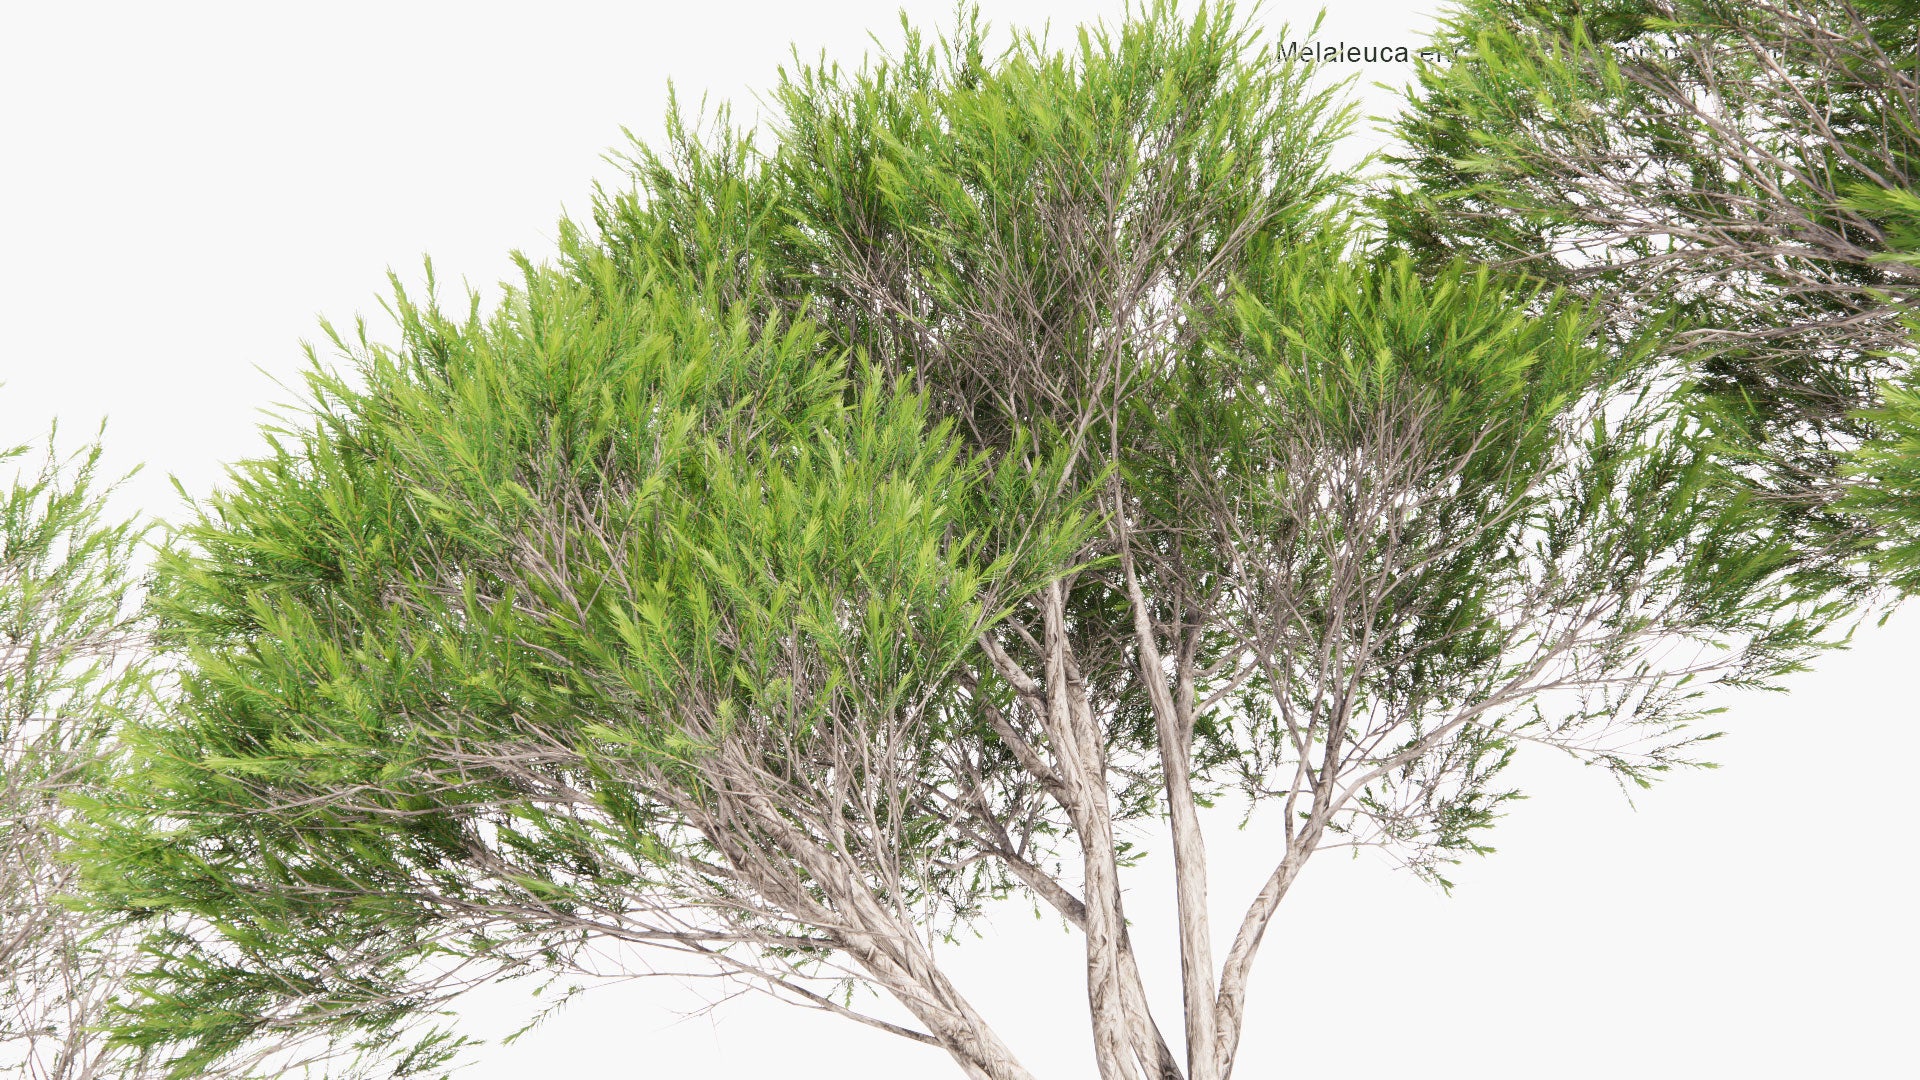 Low Poly Melaleuca Ericifolia - Swamp Paperbark (3D Model)